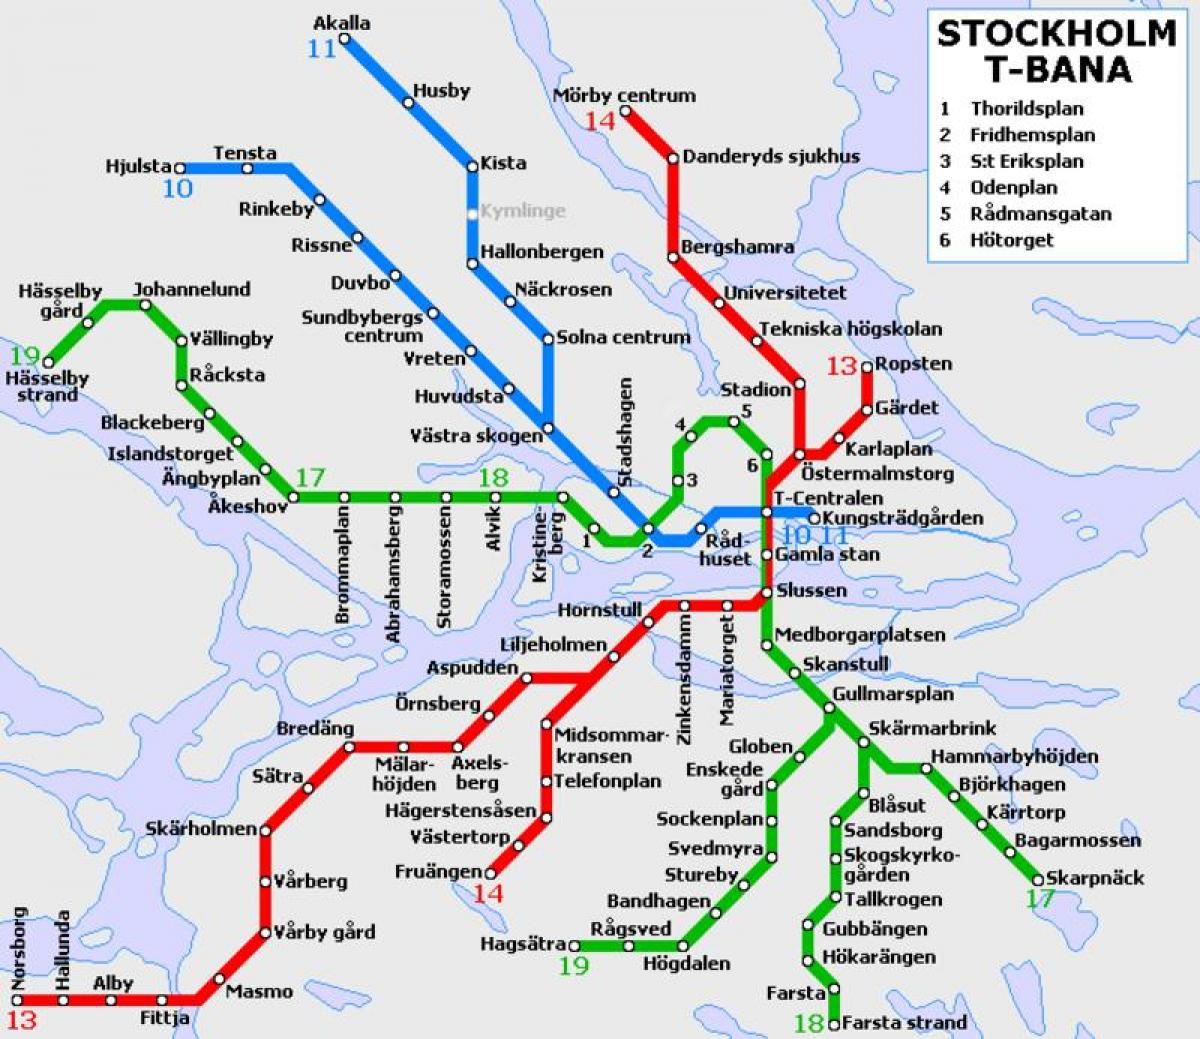 सार्वजनिक परिवहन स्टॉकहोम के मानचित्र